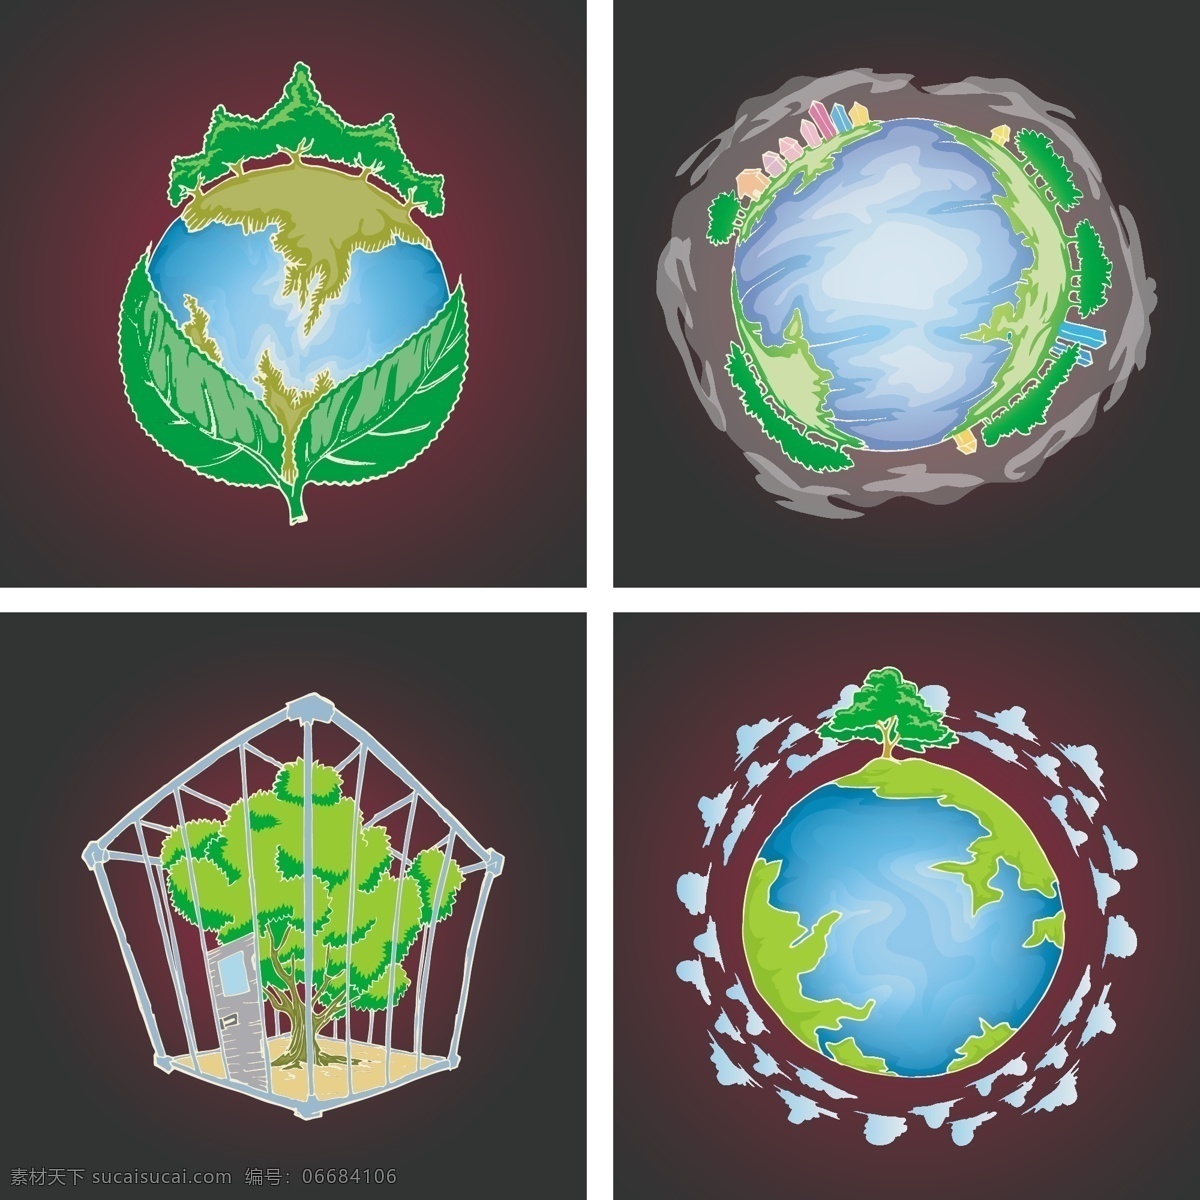 矢量地球 卡通地球 地球插图 创意地球 空间环境 环保主题 环保地球 树木 环保 绿色地球 生活百科 矢量素材 白色